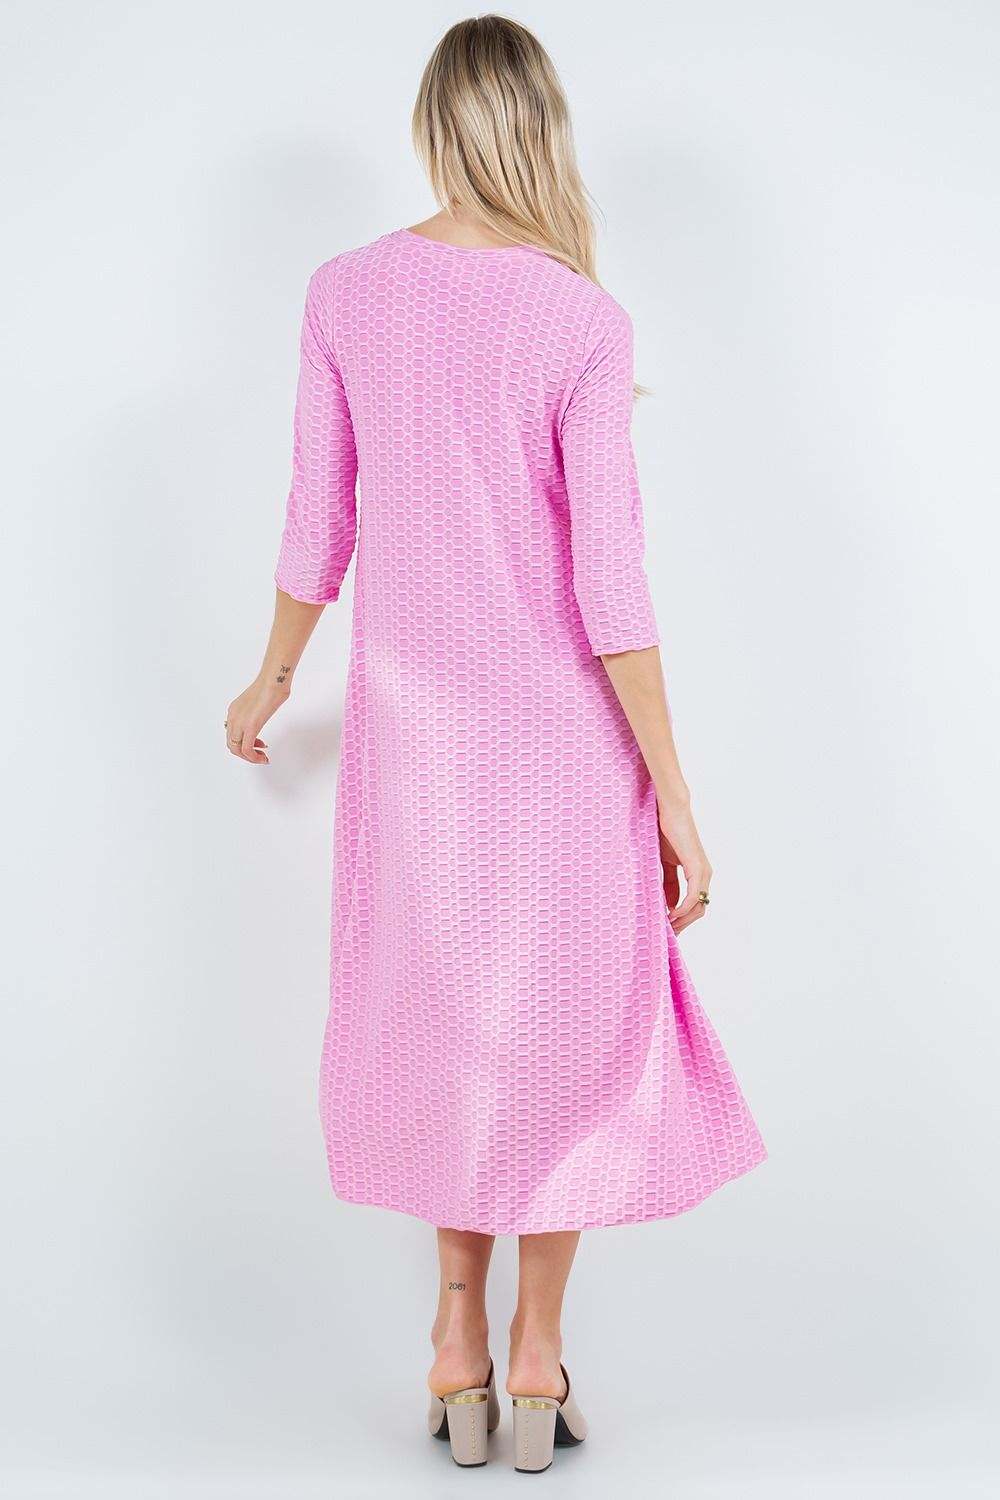 Charleigh Dress-Pink